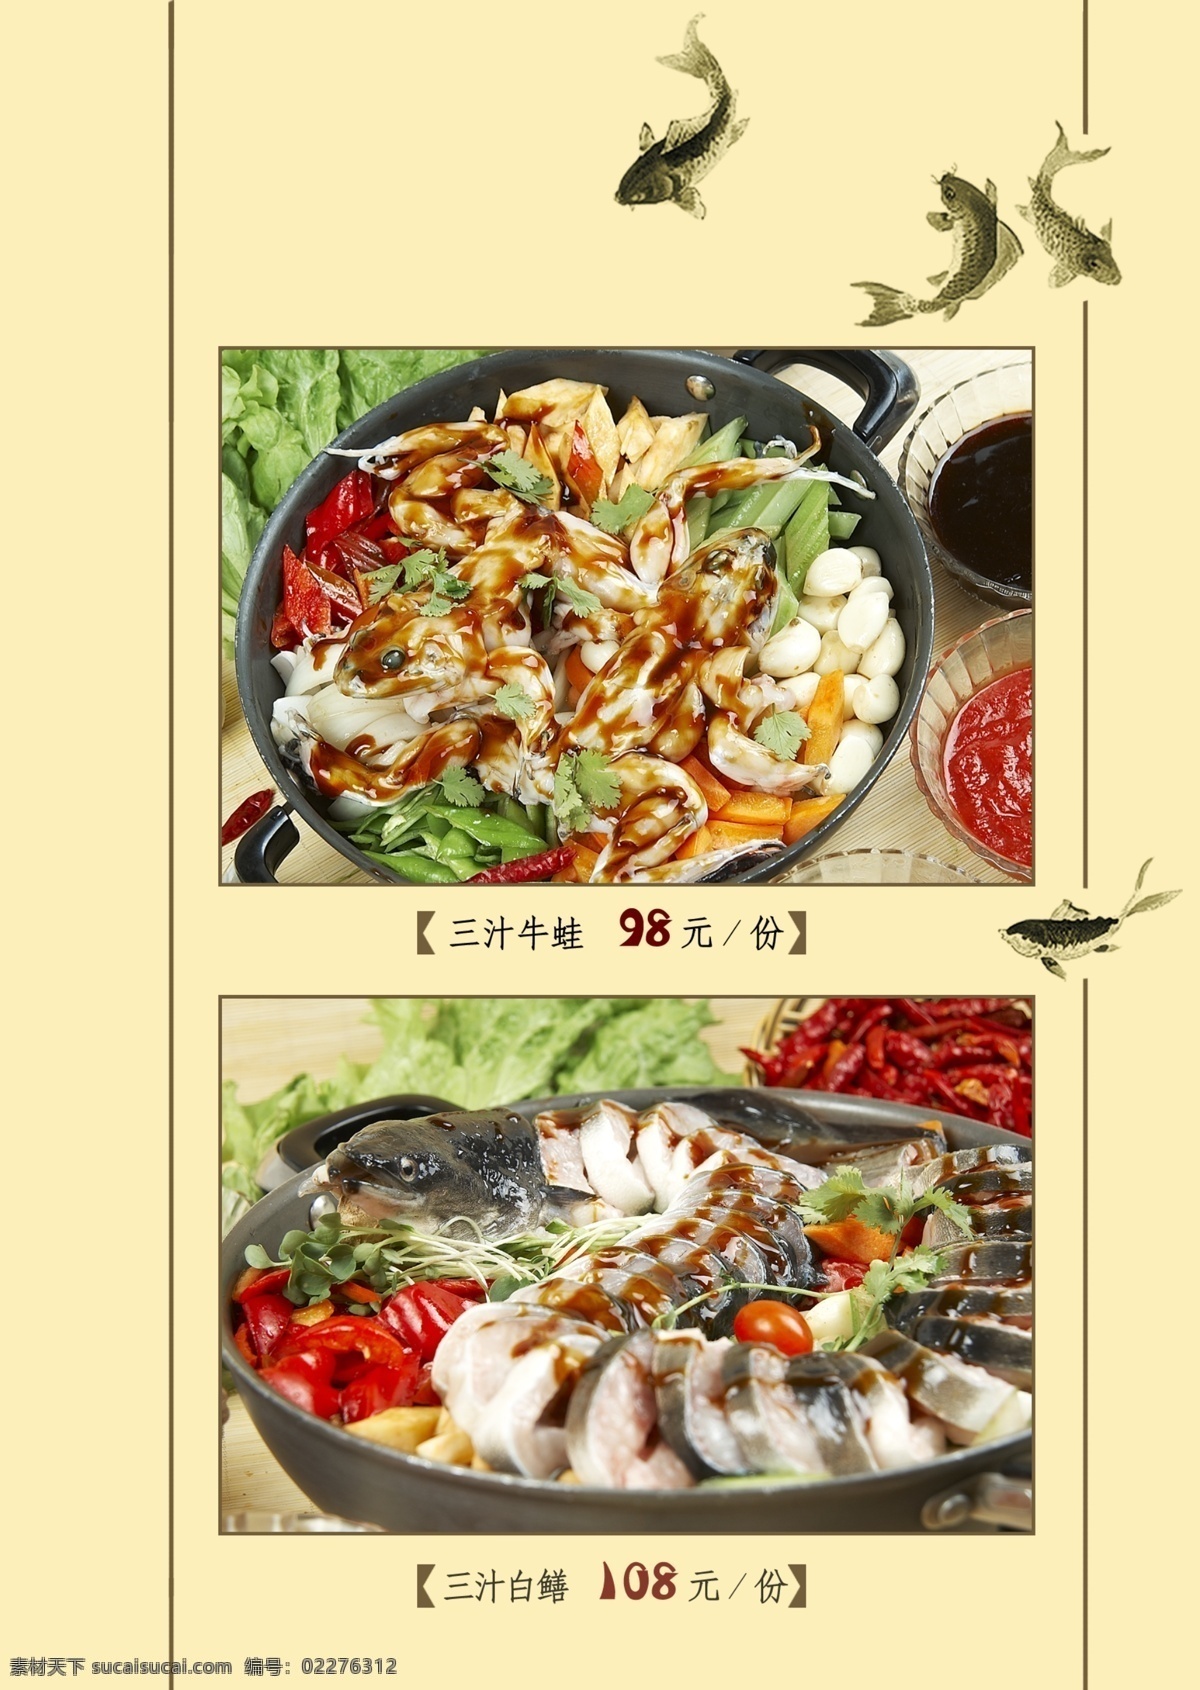 中餐 菜谱 背景 中国风 底纹 纹样 焖锅 鱼 菜单菜谱 广告设计模板 源文件